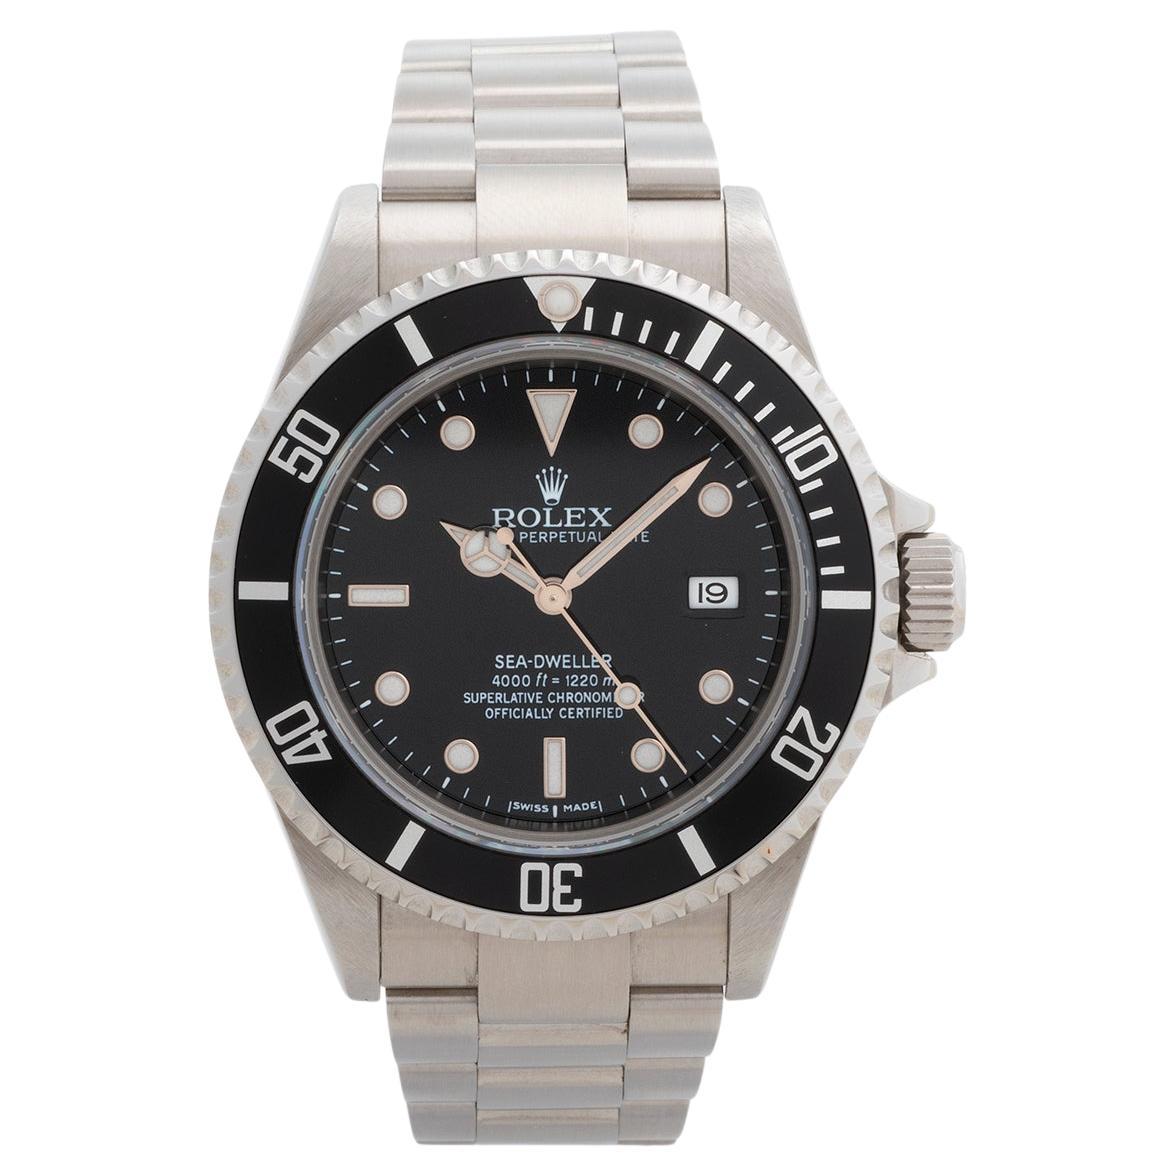 Montre-bracelet Rolex Seadweller Réf. 16600 / 16600t. Ensemble complet. Année 2007/2008